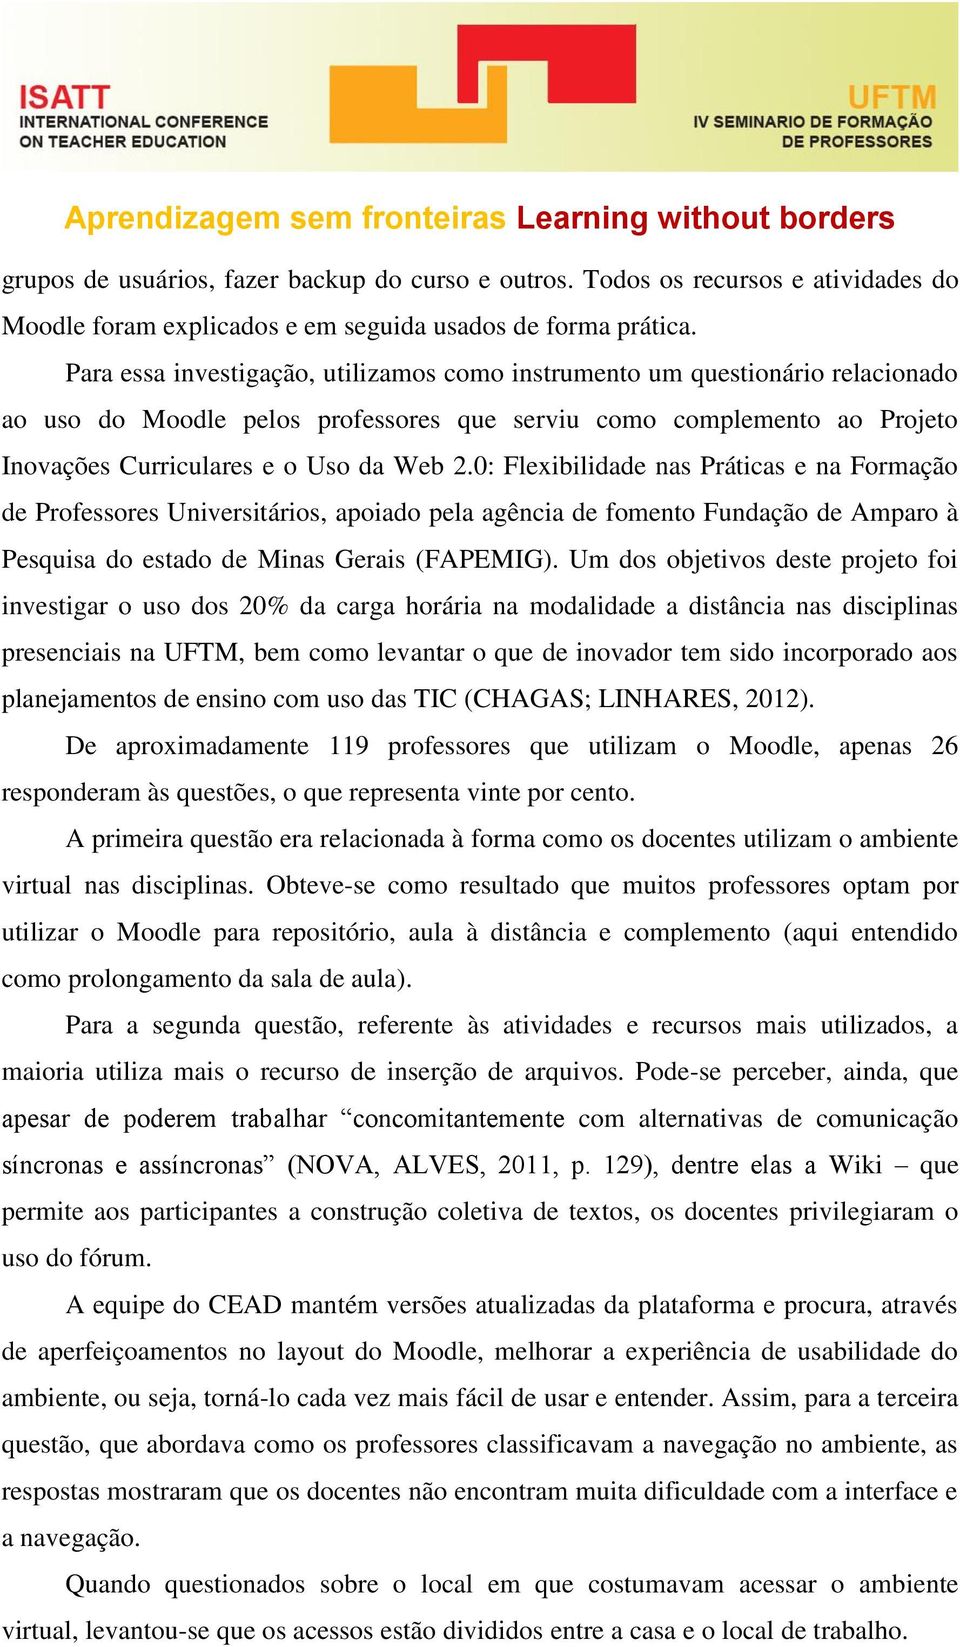 0: Flexibilidade nas Práticas e na Formação de Professores Universitários, apoiado pela agência de fomento Fundação de Amparo à Pesquisa do estado de Minas Gerais (FAPEMIG).